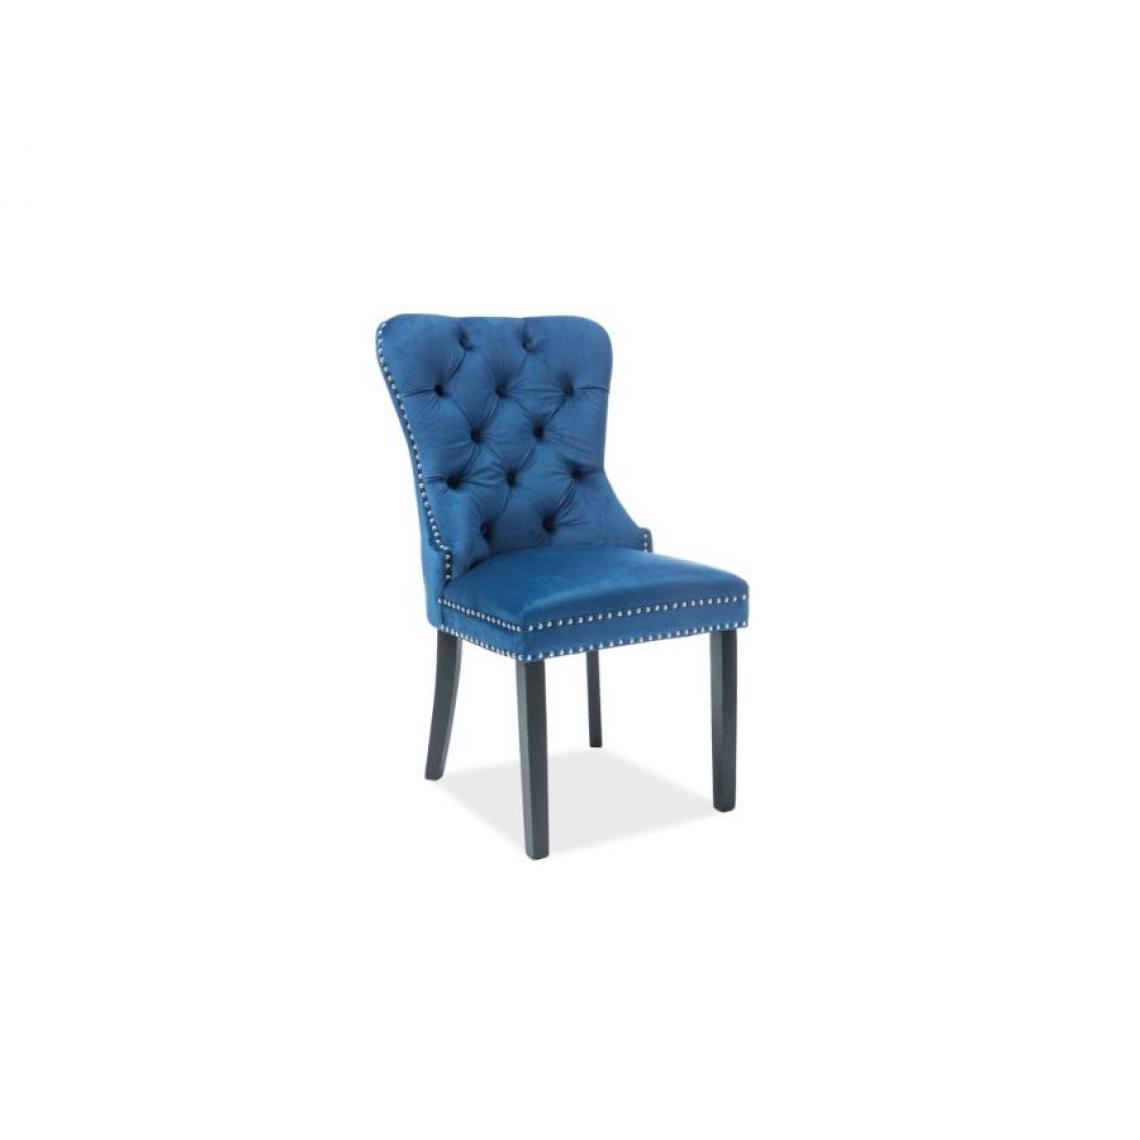 Hucoco - AMANDI | Magnifique chaise en velours salon salle à manger | Dimensions 98x56x45 cm | Structure en bois | Chaise velours - Bleu - Chaises